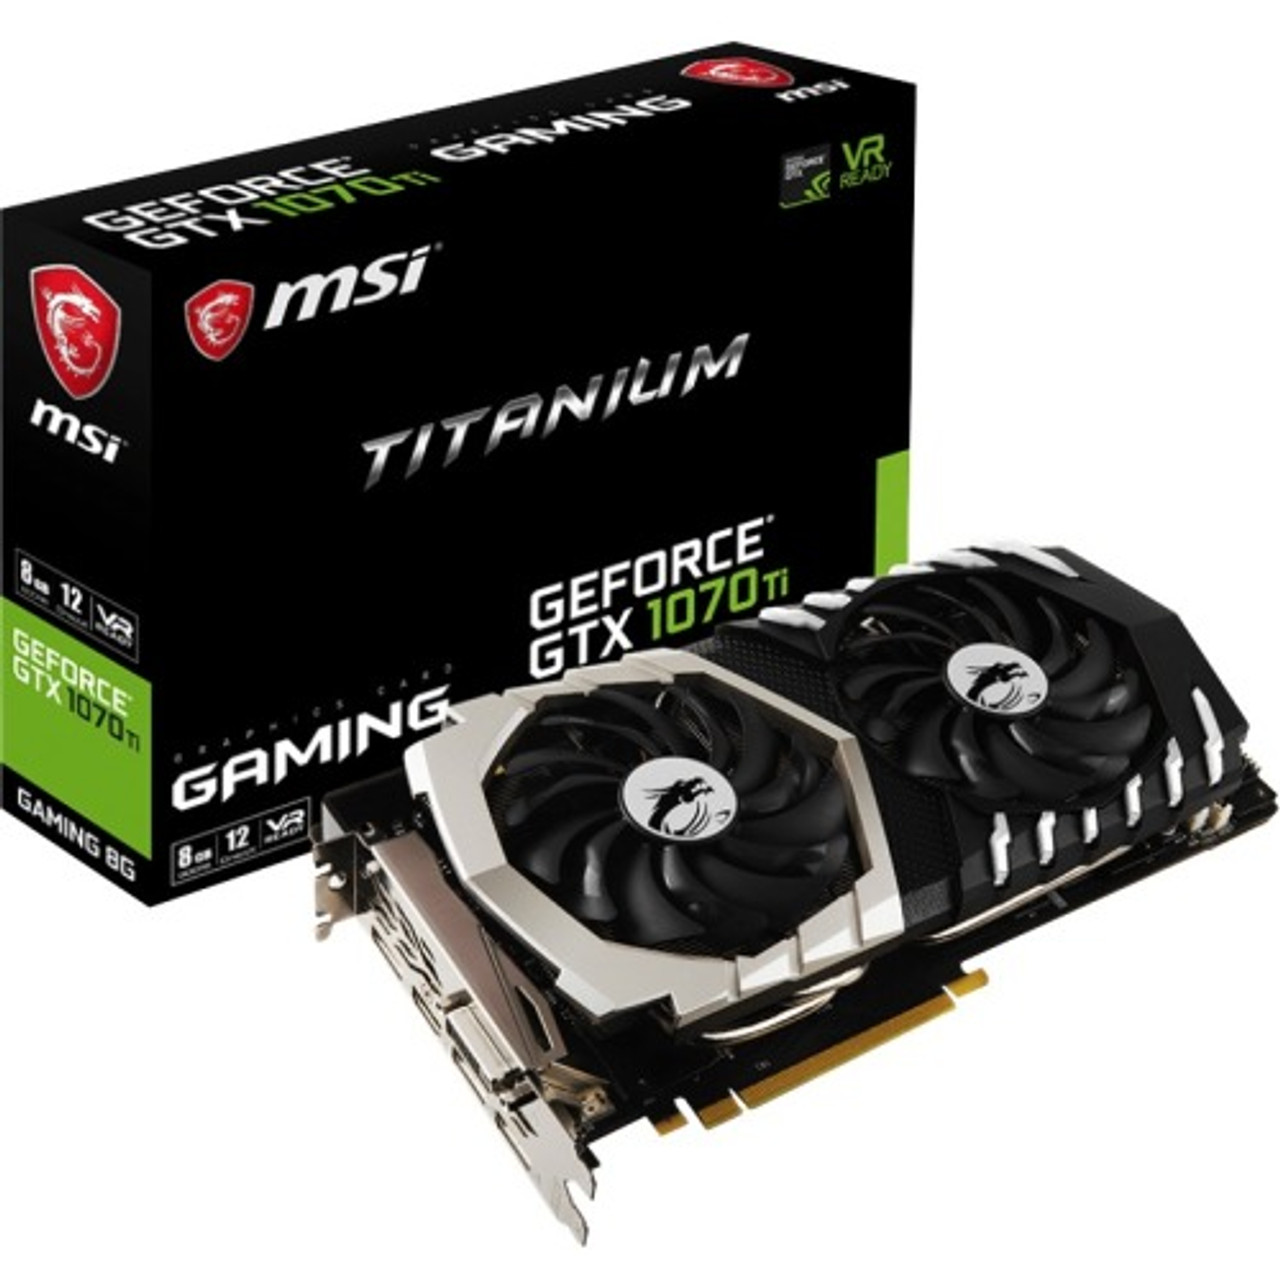 G1070TT8 MSI Nvidia GeForce GTX 1070 Ti Titanium 8GB GDDR5 DVI / HDMI